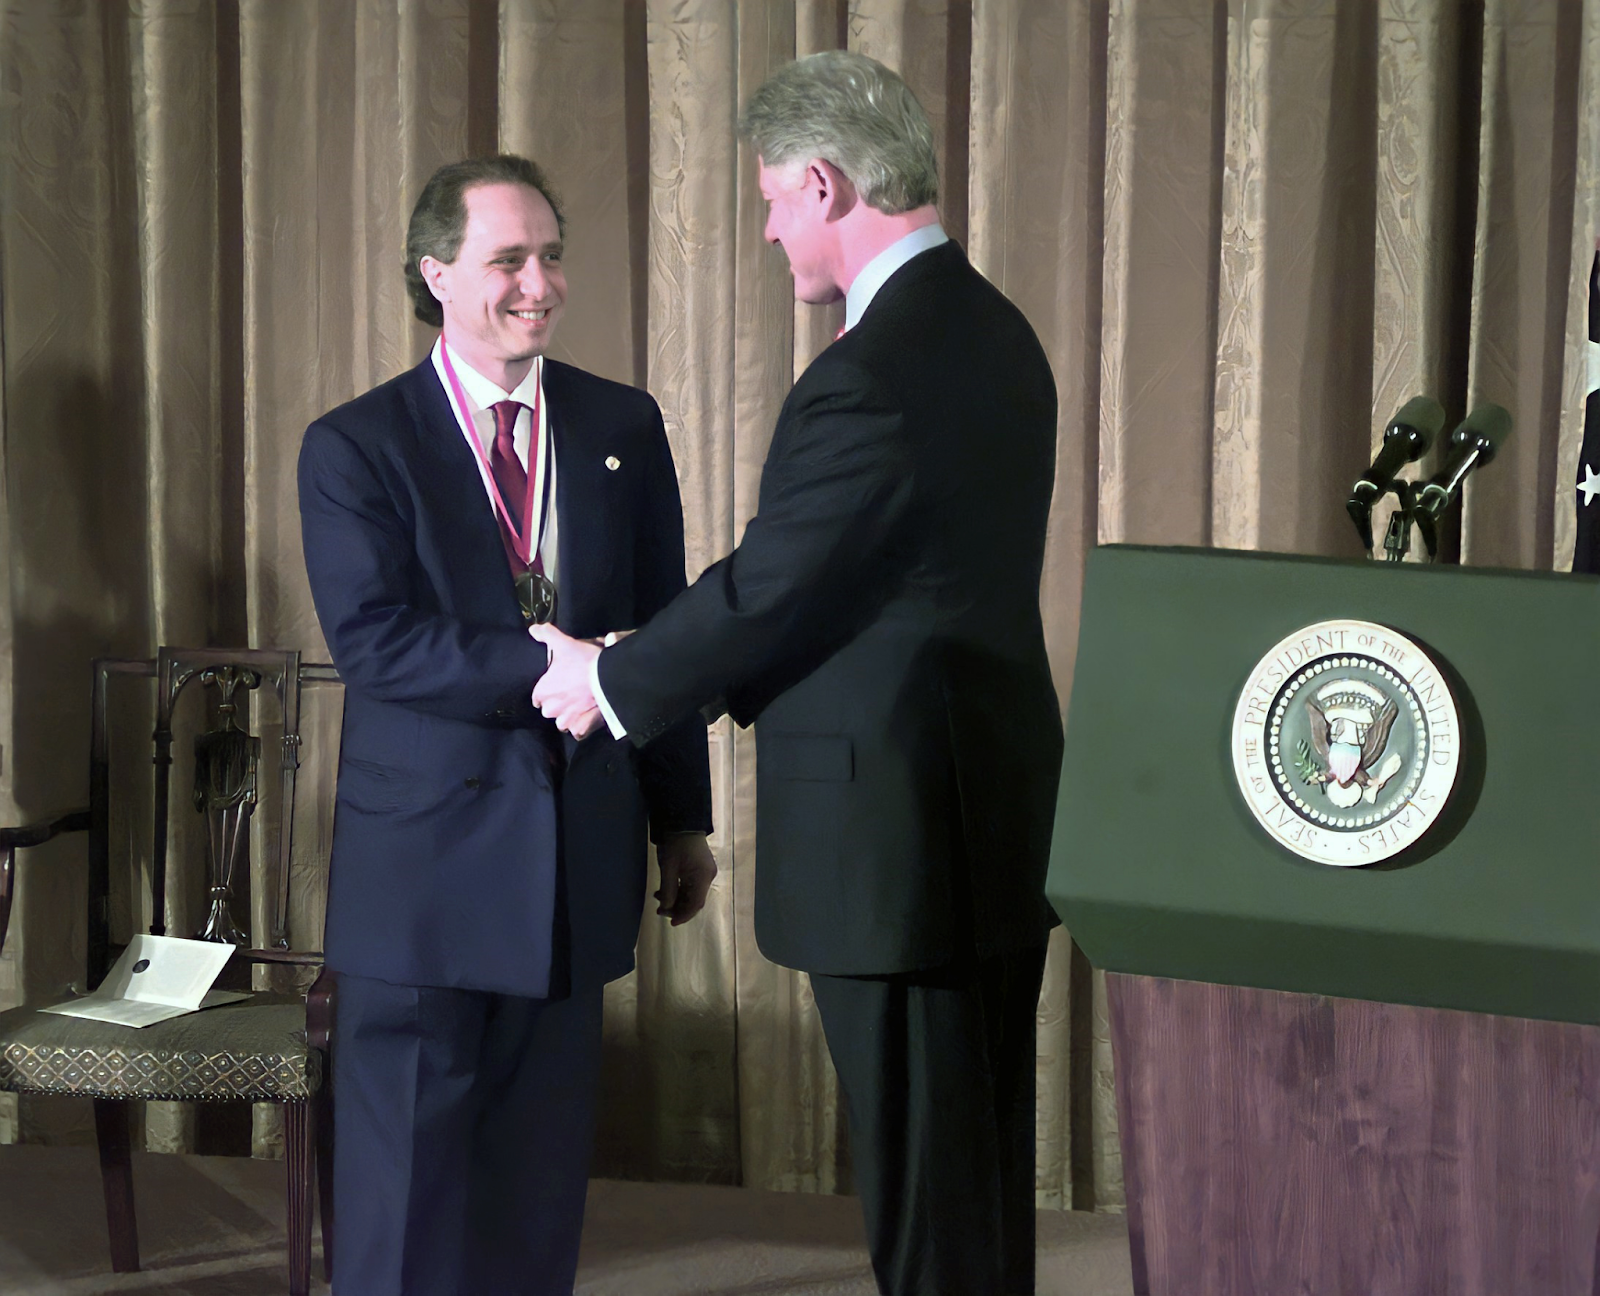 14 марта 2000 года: Президент Билл Клинтон вручает Рэю Курцвейлу медаль во время церемонии в Белом доме.